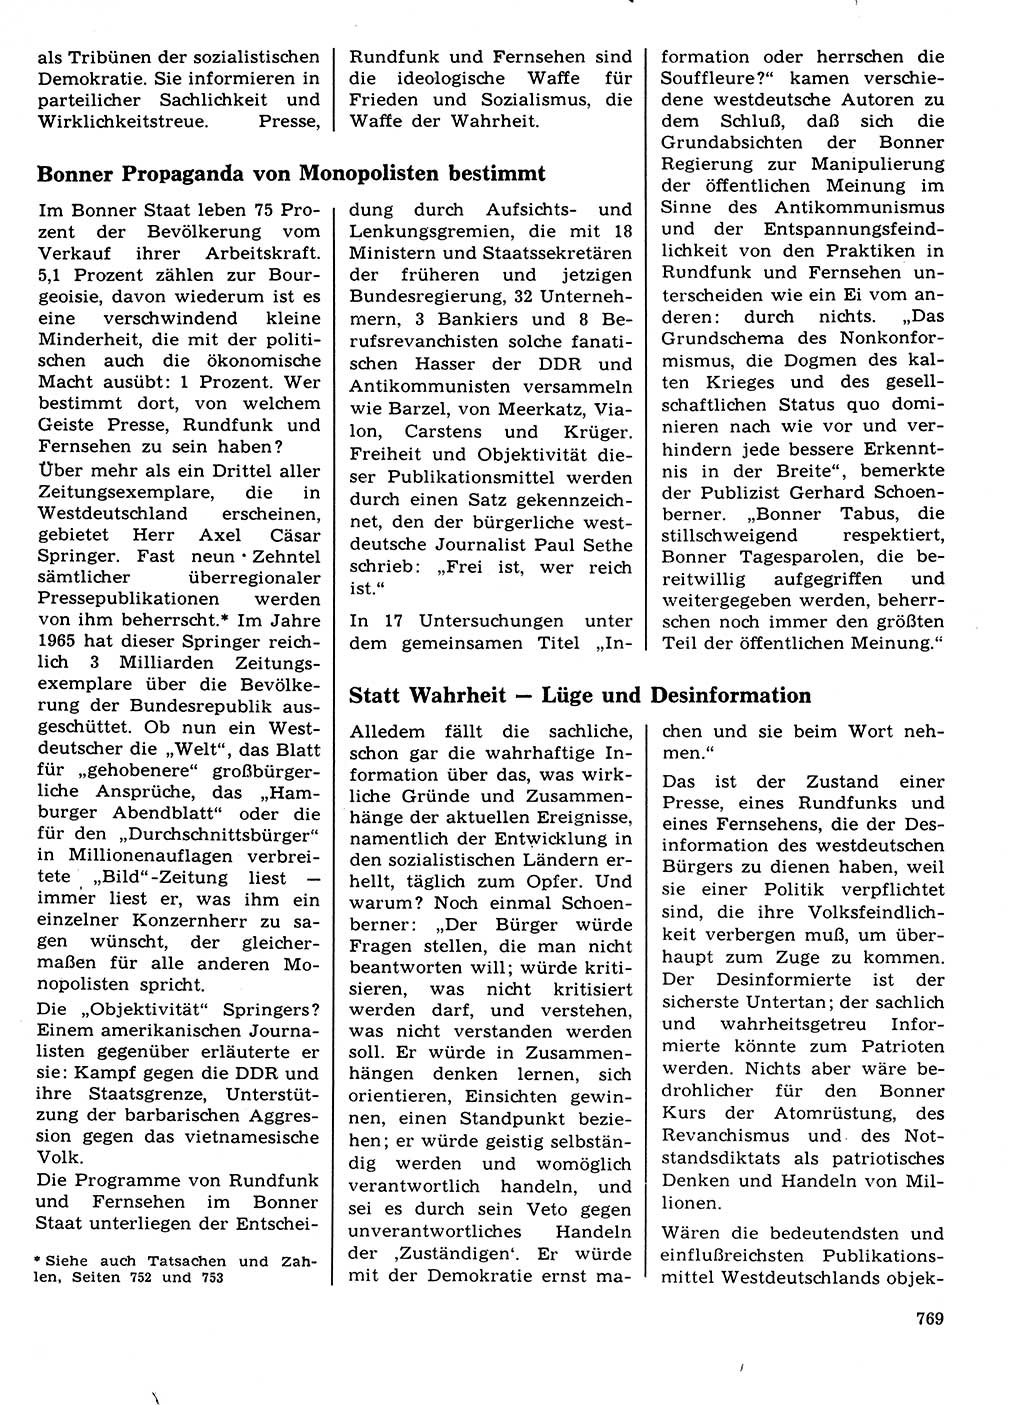 Neuer Weg (NW), Organ des Zentralkomitees (ZK) der SED (Sozialistische Einheitspartei Deutschlands) für Fragen des Parteilebens, 21. Jahrgang [Deutsche Demokratische Republik (DDR)] 1966, Seite 769 (NW ZK SED DDR 1966, S. 769)